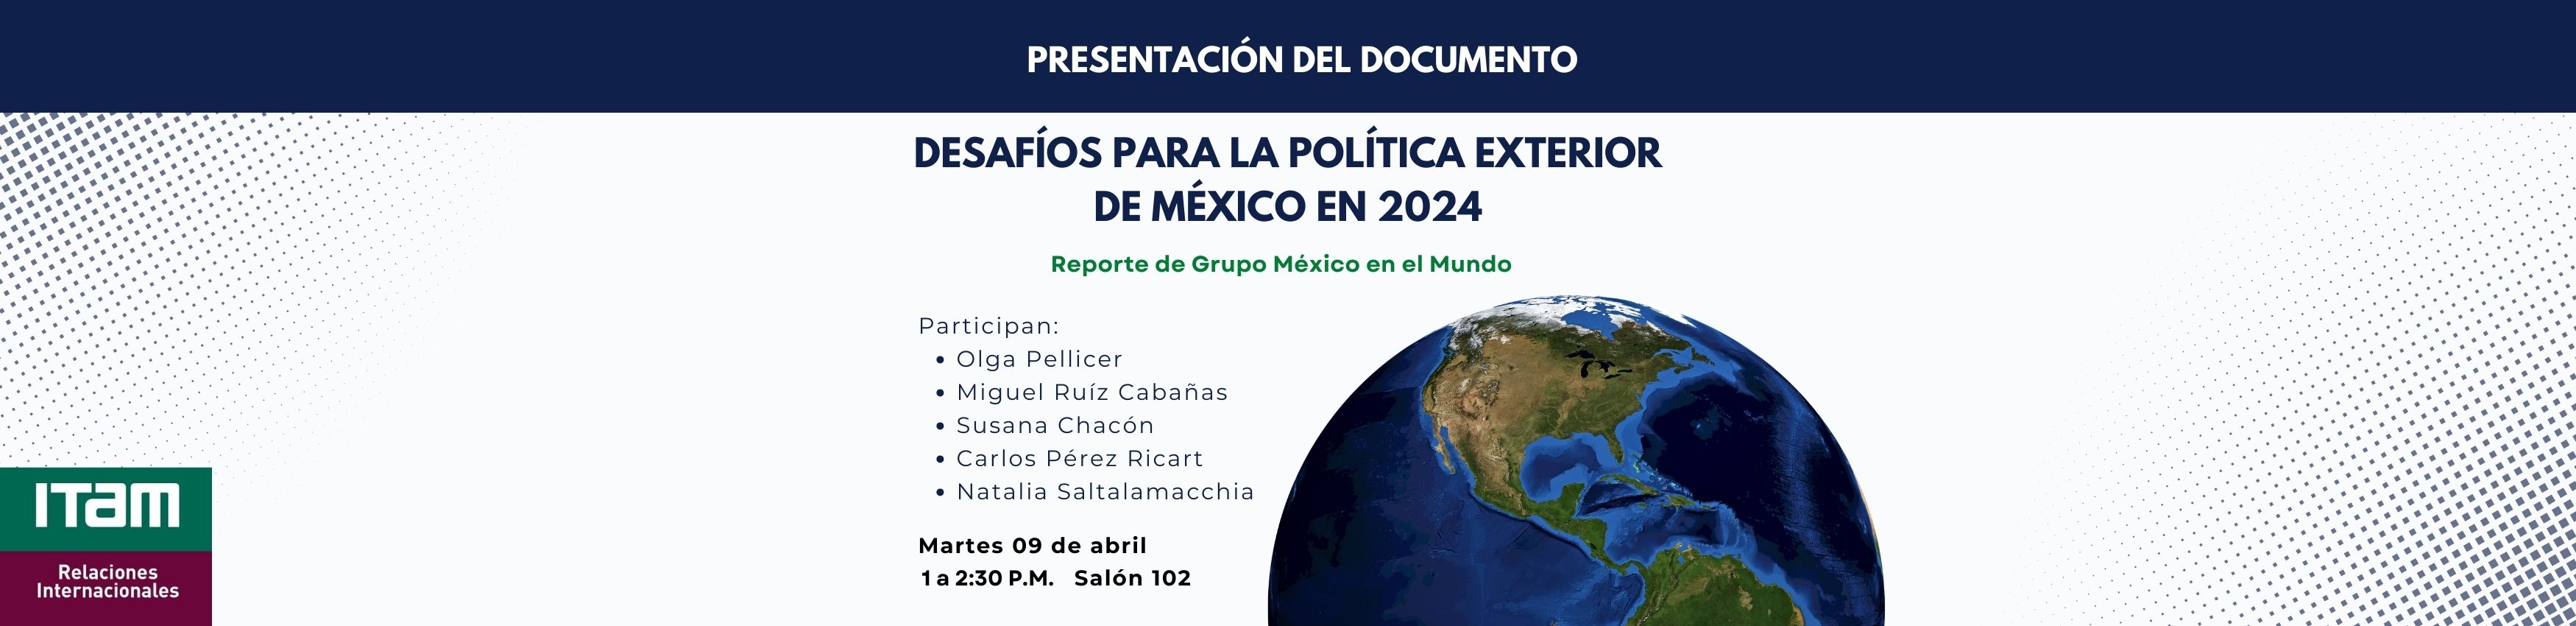 Te invitamos a la presentación del documento desafíos para la política exterior de México